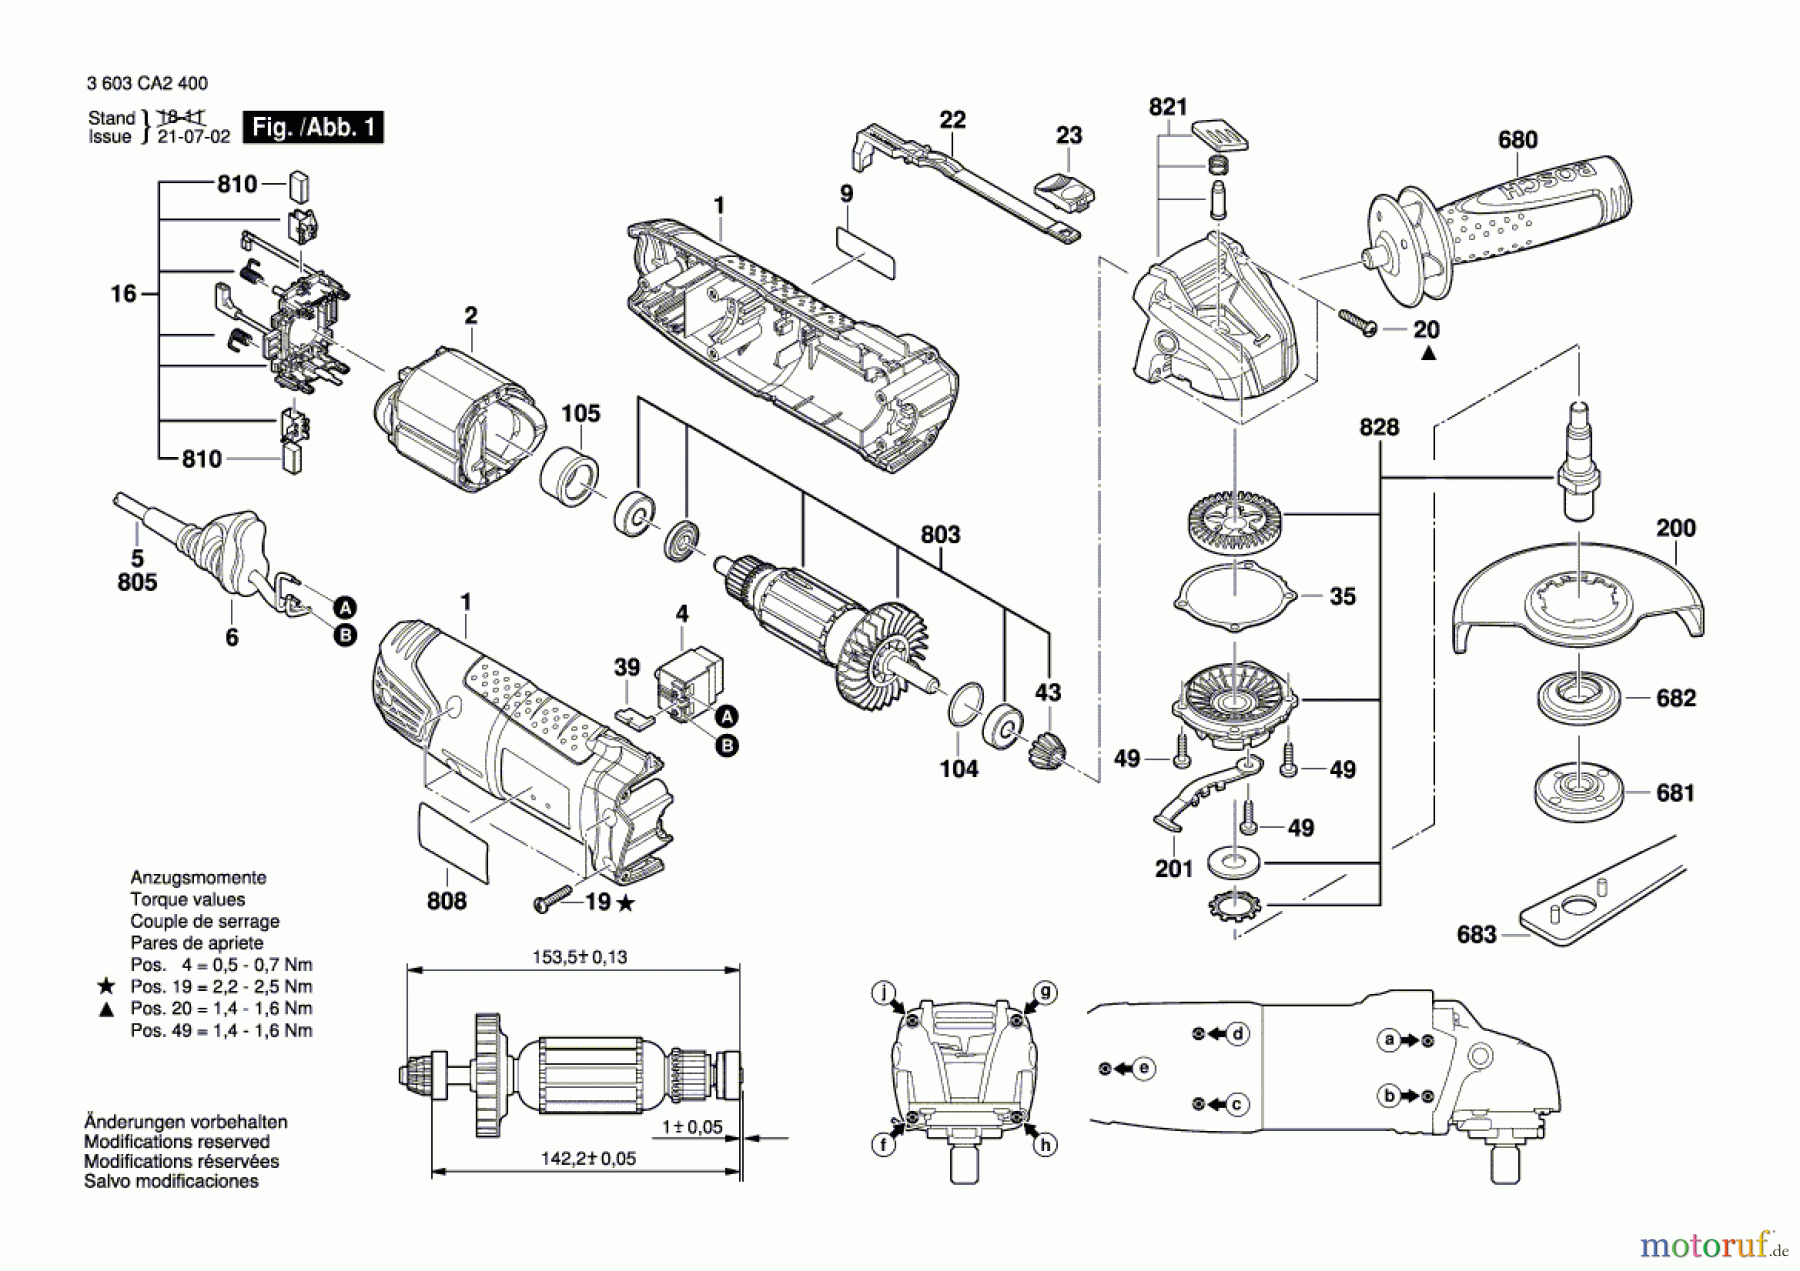  Bosch Werkzeug Winkelschleifer PWS 750-125 Seite 1